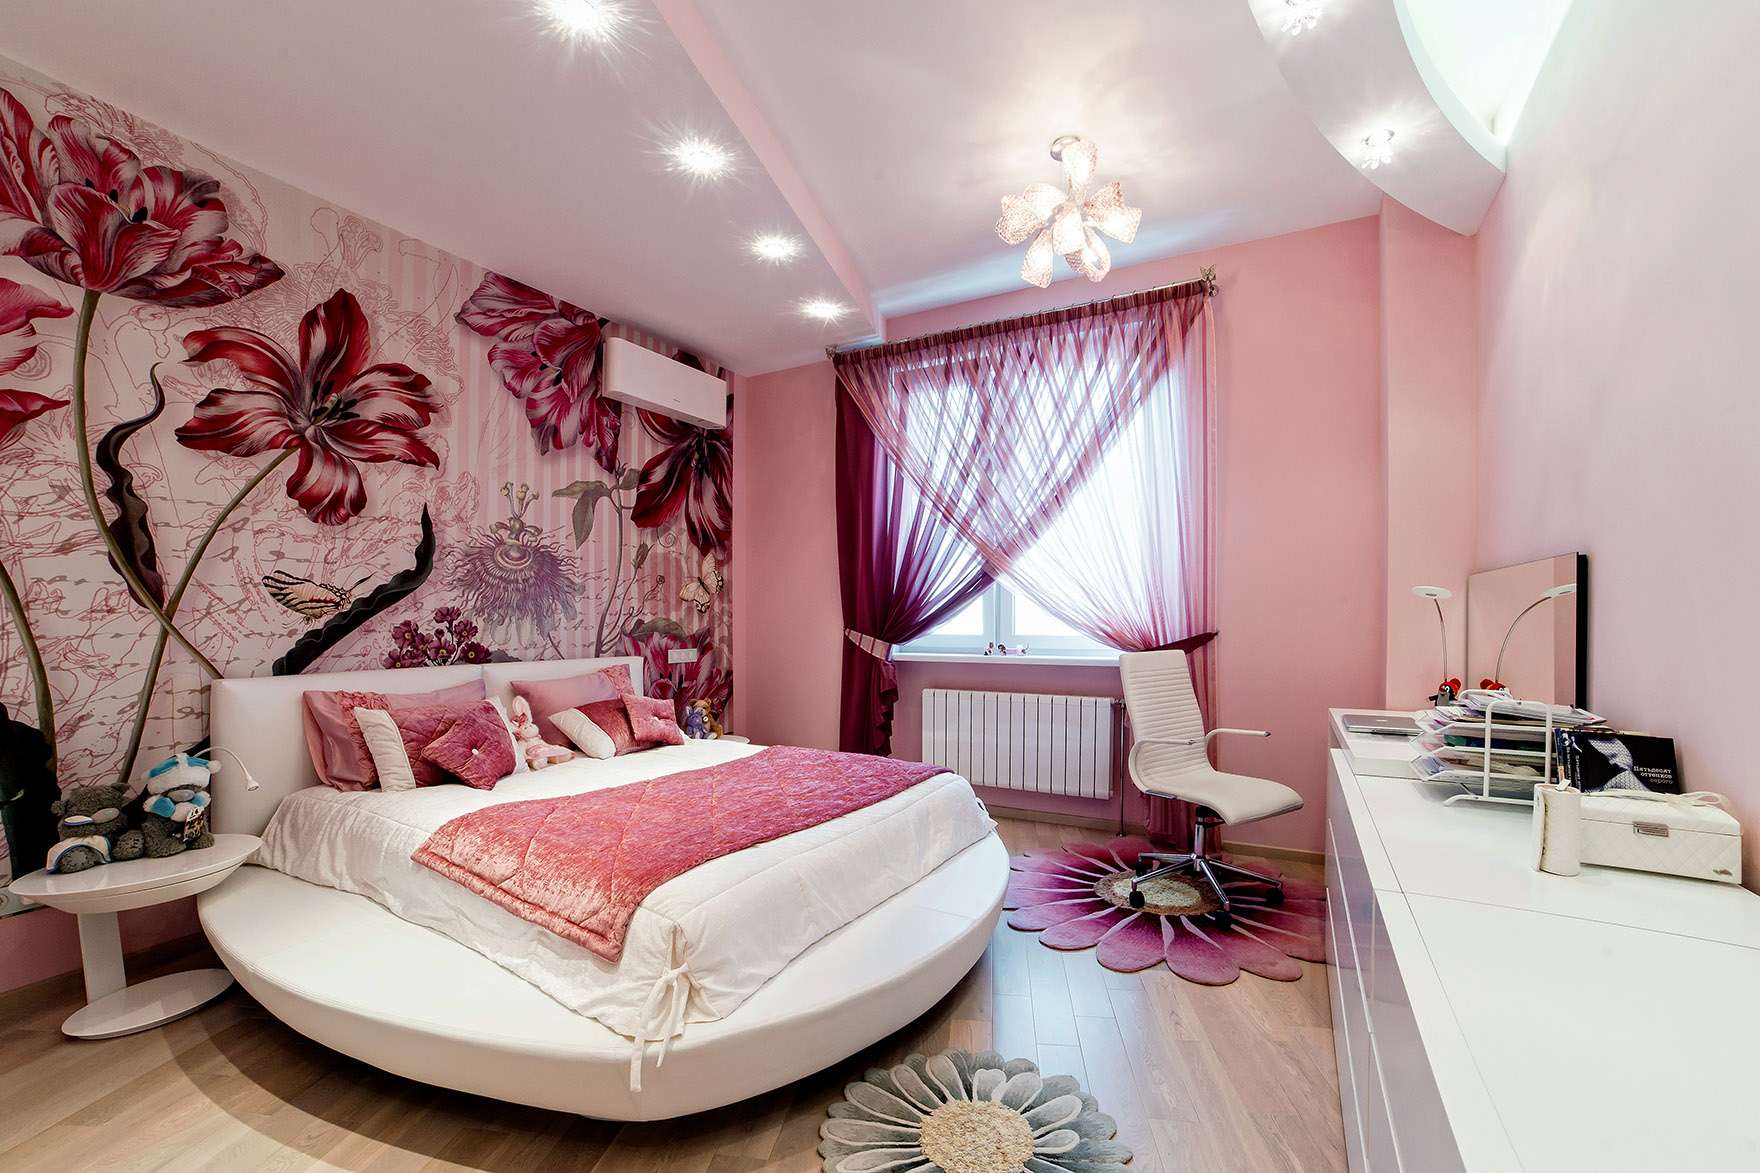 Дизайн комнате красиво фото. Спальня для девушки. Фотообои в интерьере спальни. Спальня в розовых тонах. Спальня в розовом цвете.